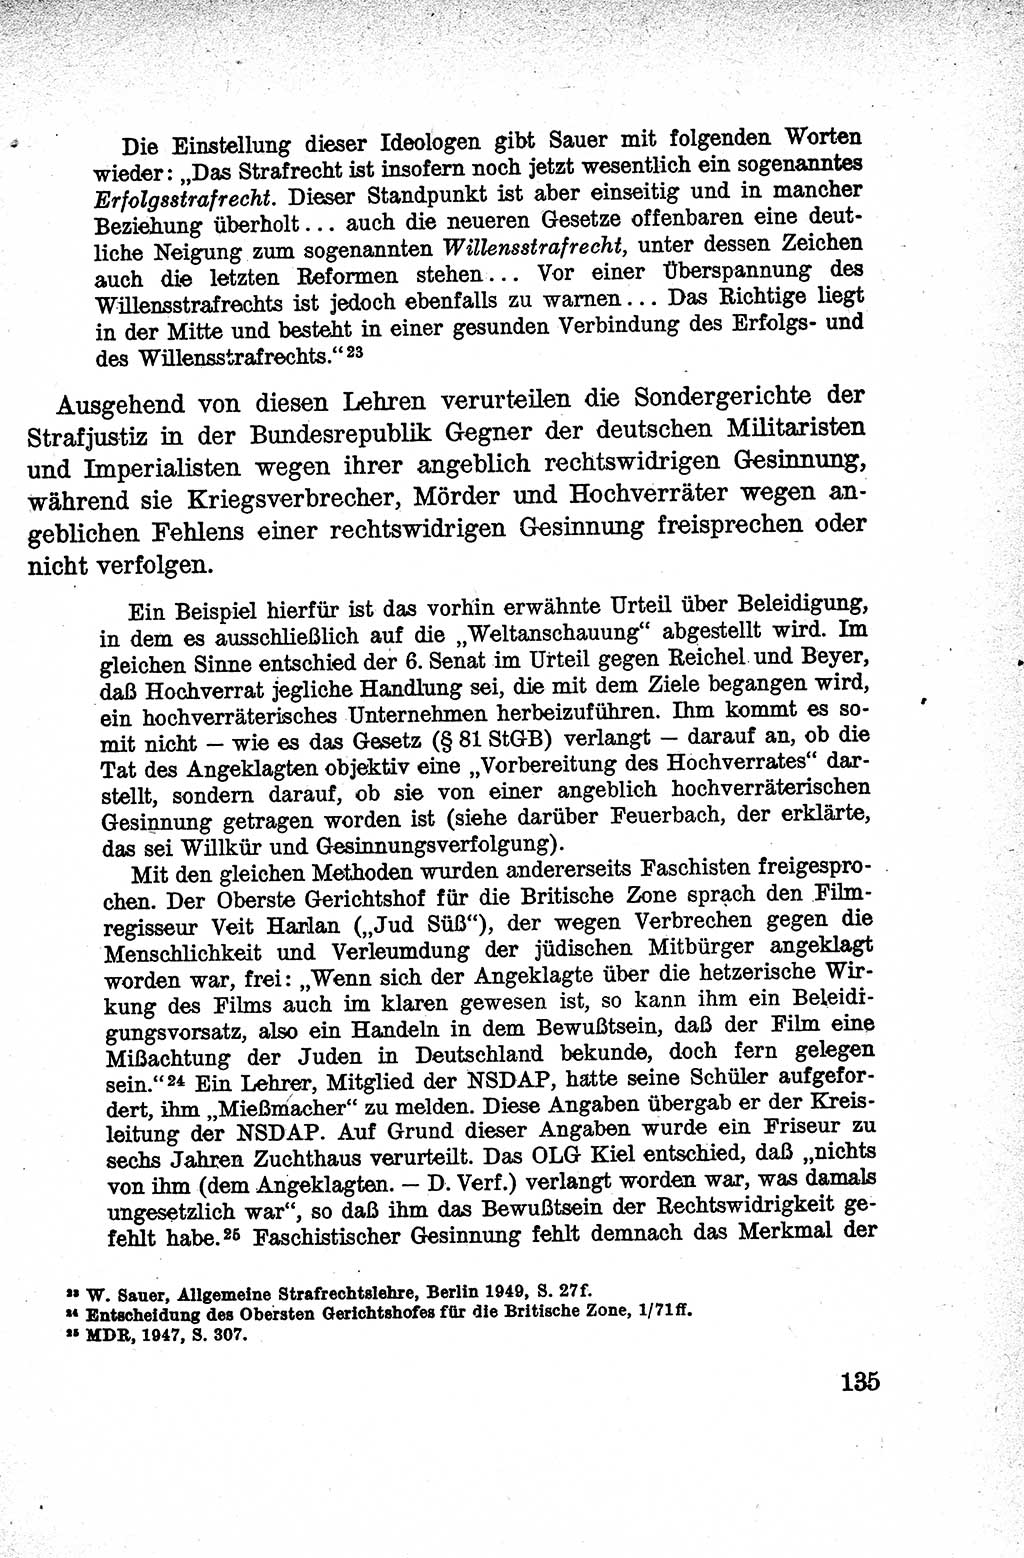 Lehrbuch des Strafrechts der Deutschen Demokratischen Republik (DDR), Allgemeiner Teil 1959, Seite 135 (Lb. Strafr. DDR AT 1959, S. 135)